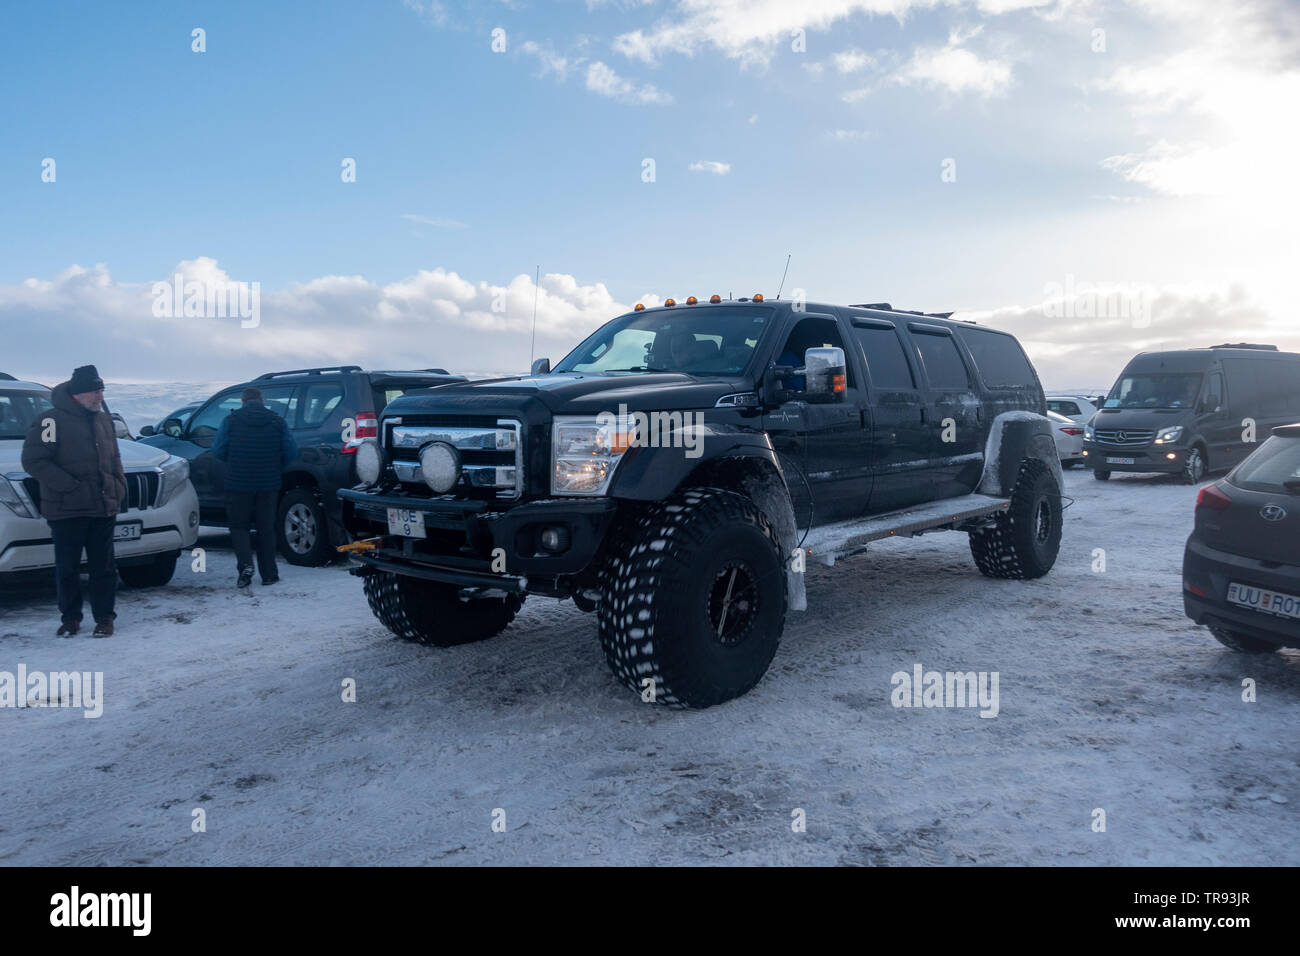 Un massiccio veicolo turistico (sei porta 'King Ranch' Super-Duty Ford SUV) in un innevato parco auto durante il periodo invernale in Islanda. Foto Stock